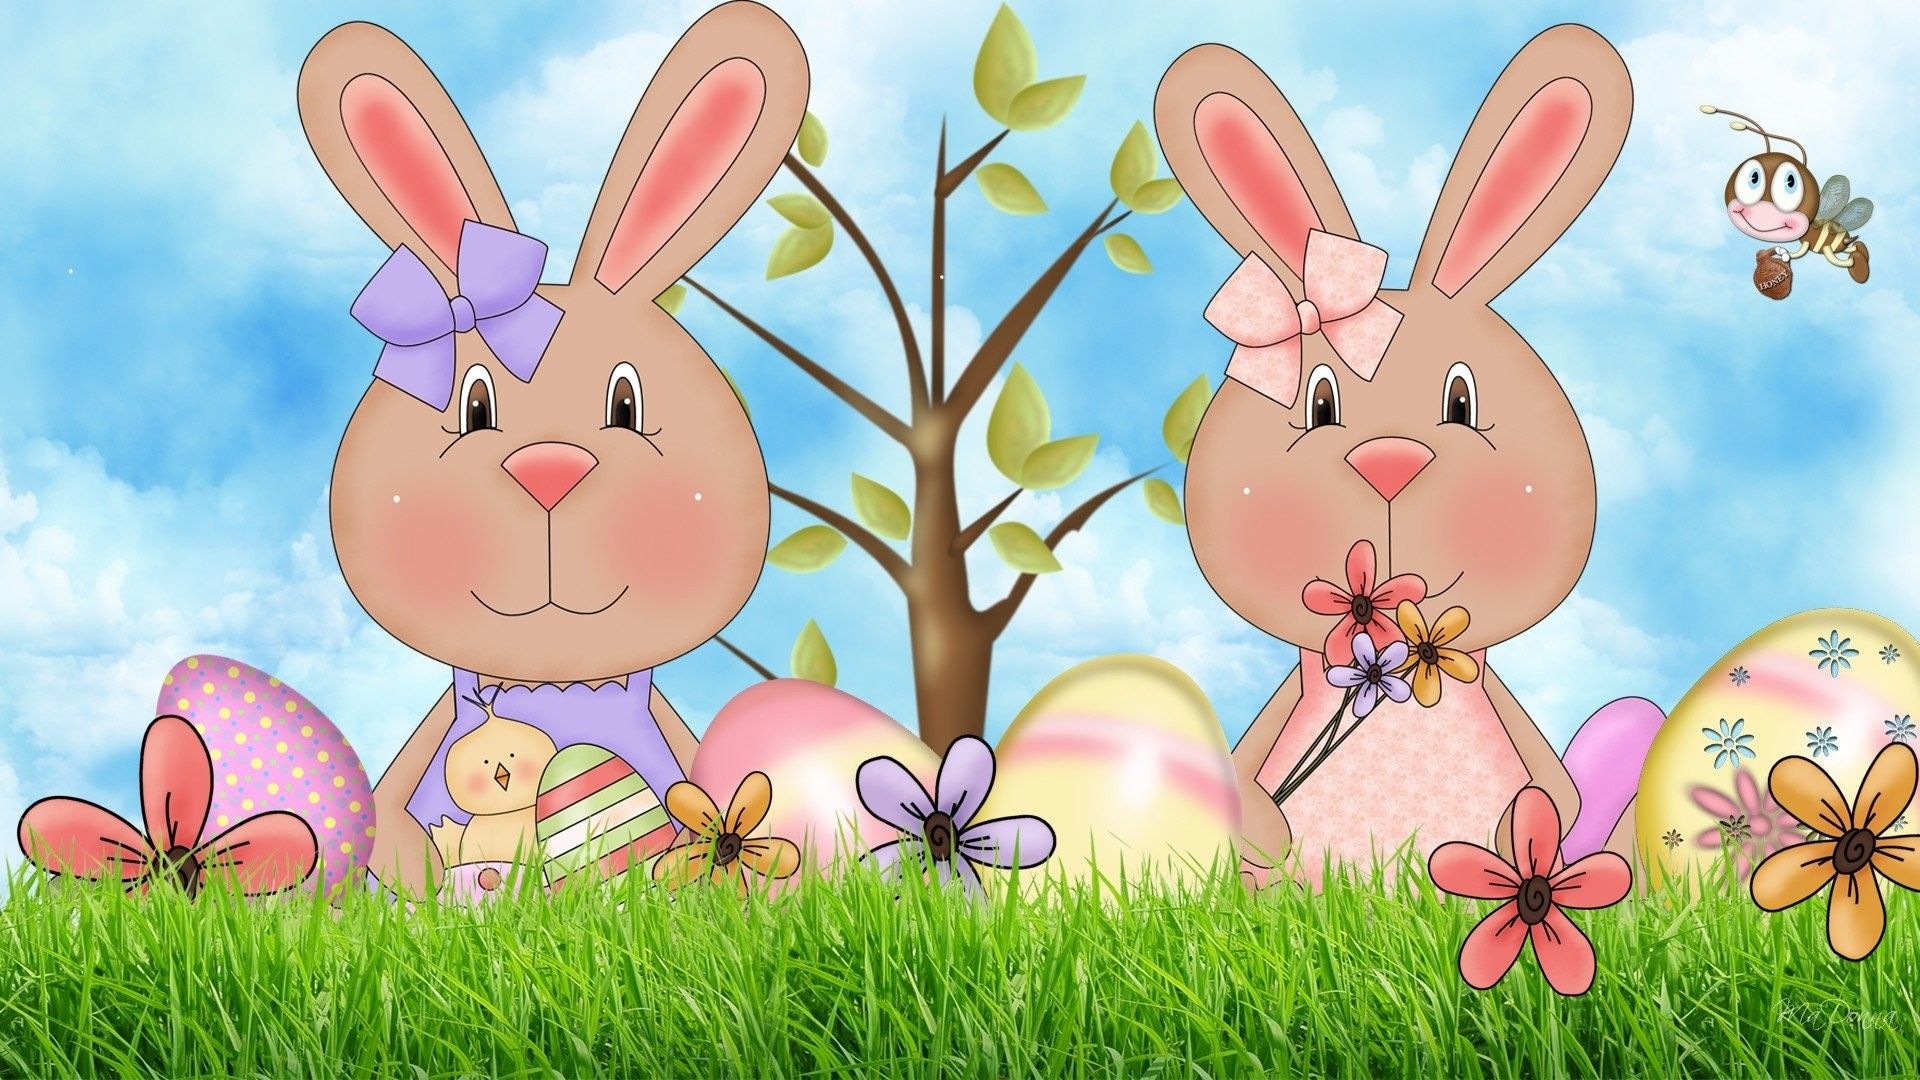 پوستر کودکانه عروسک های خرگوش در بهار مناسب چاپ